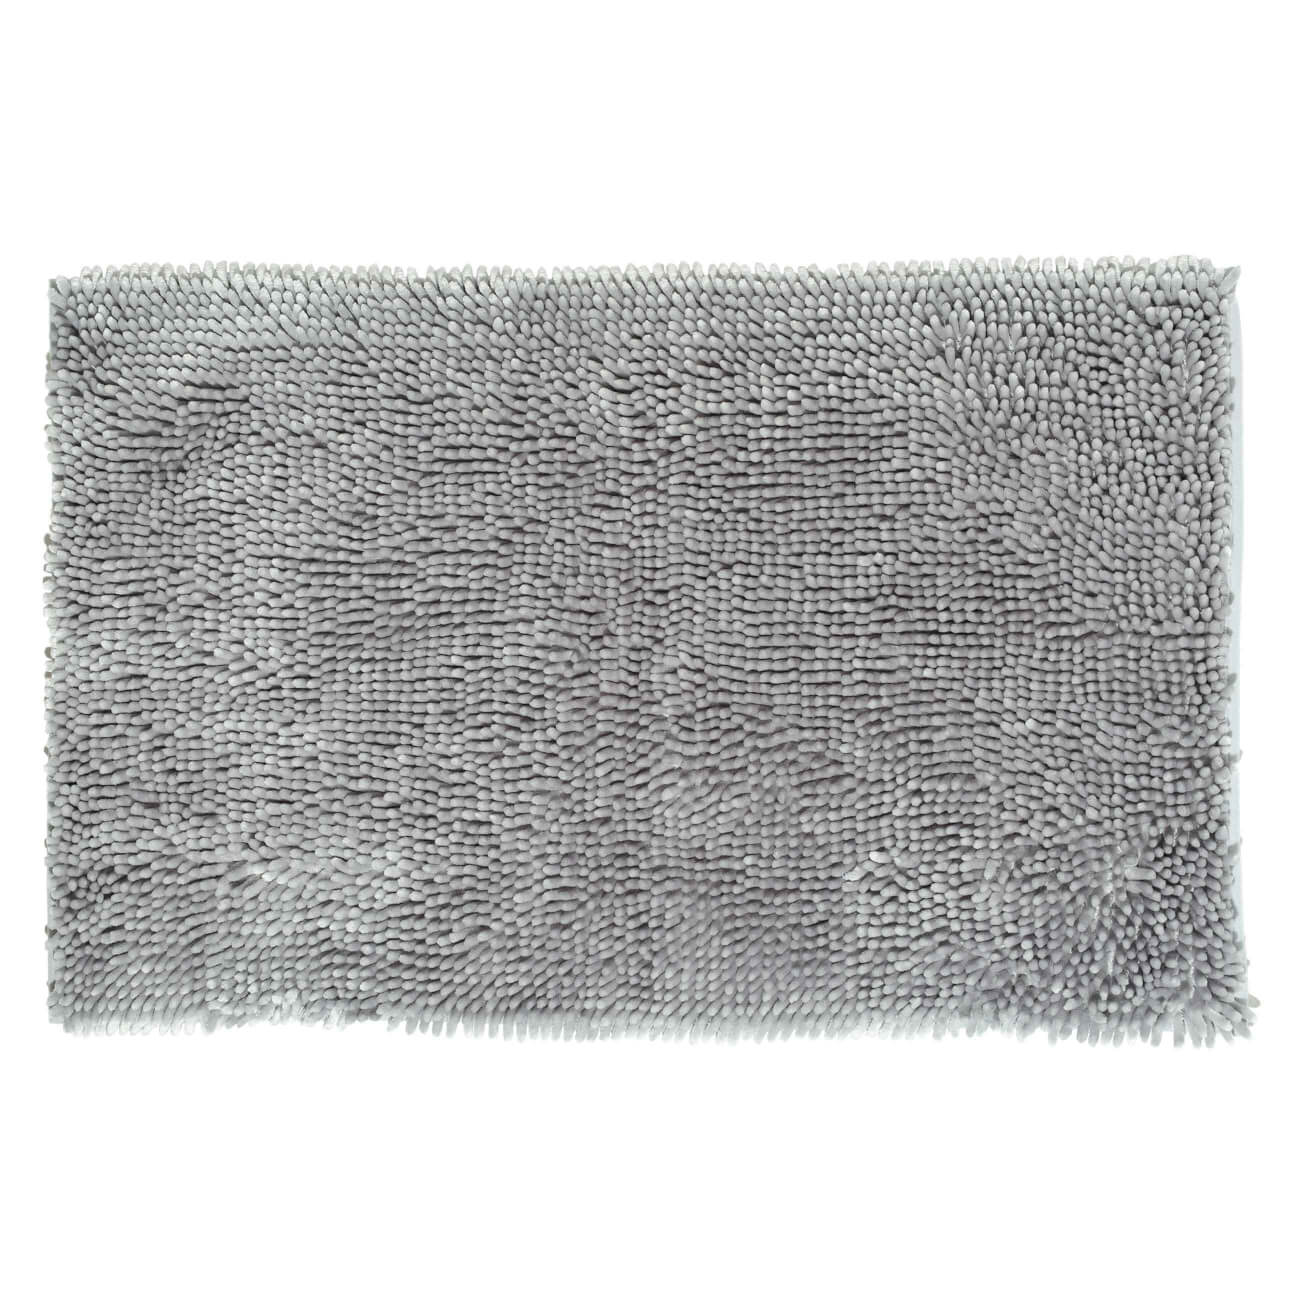 Коврик, 50х80 см, противоскользящий, полиэстер, серый, Fluff садовый коврик